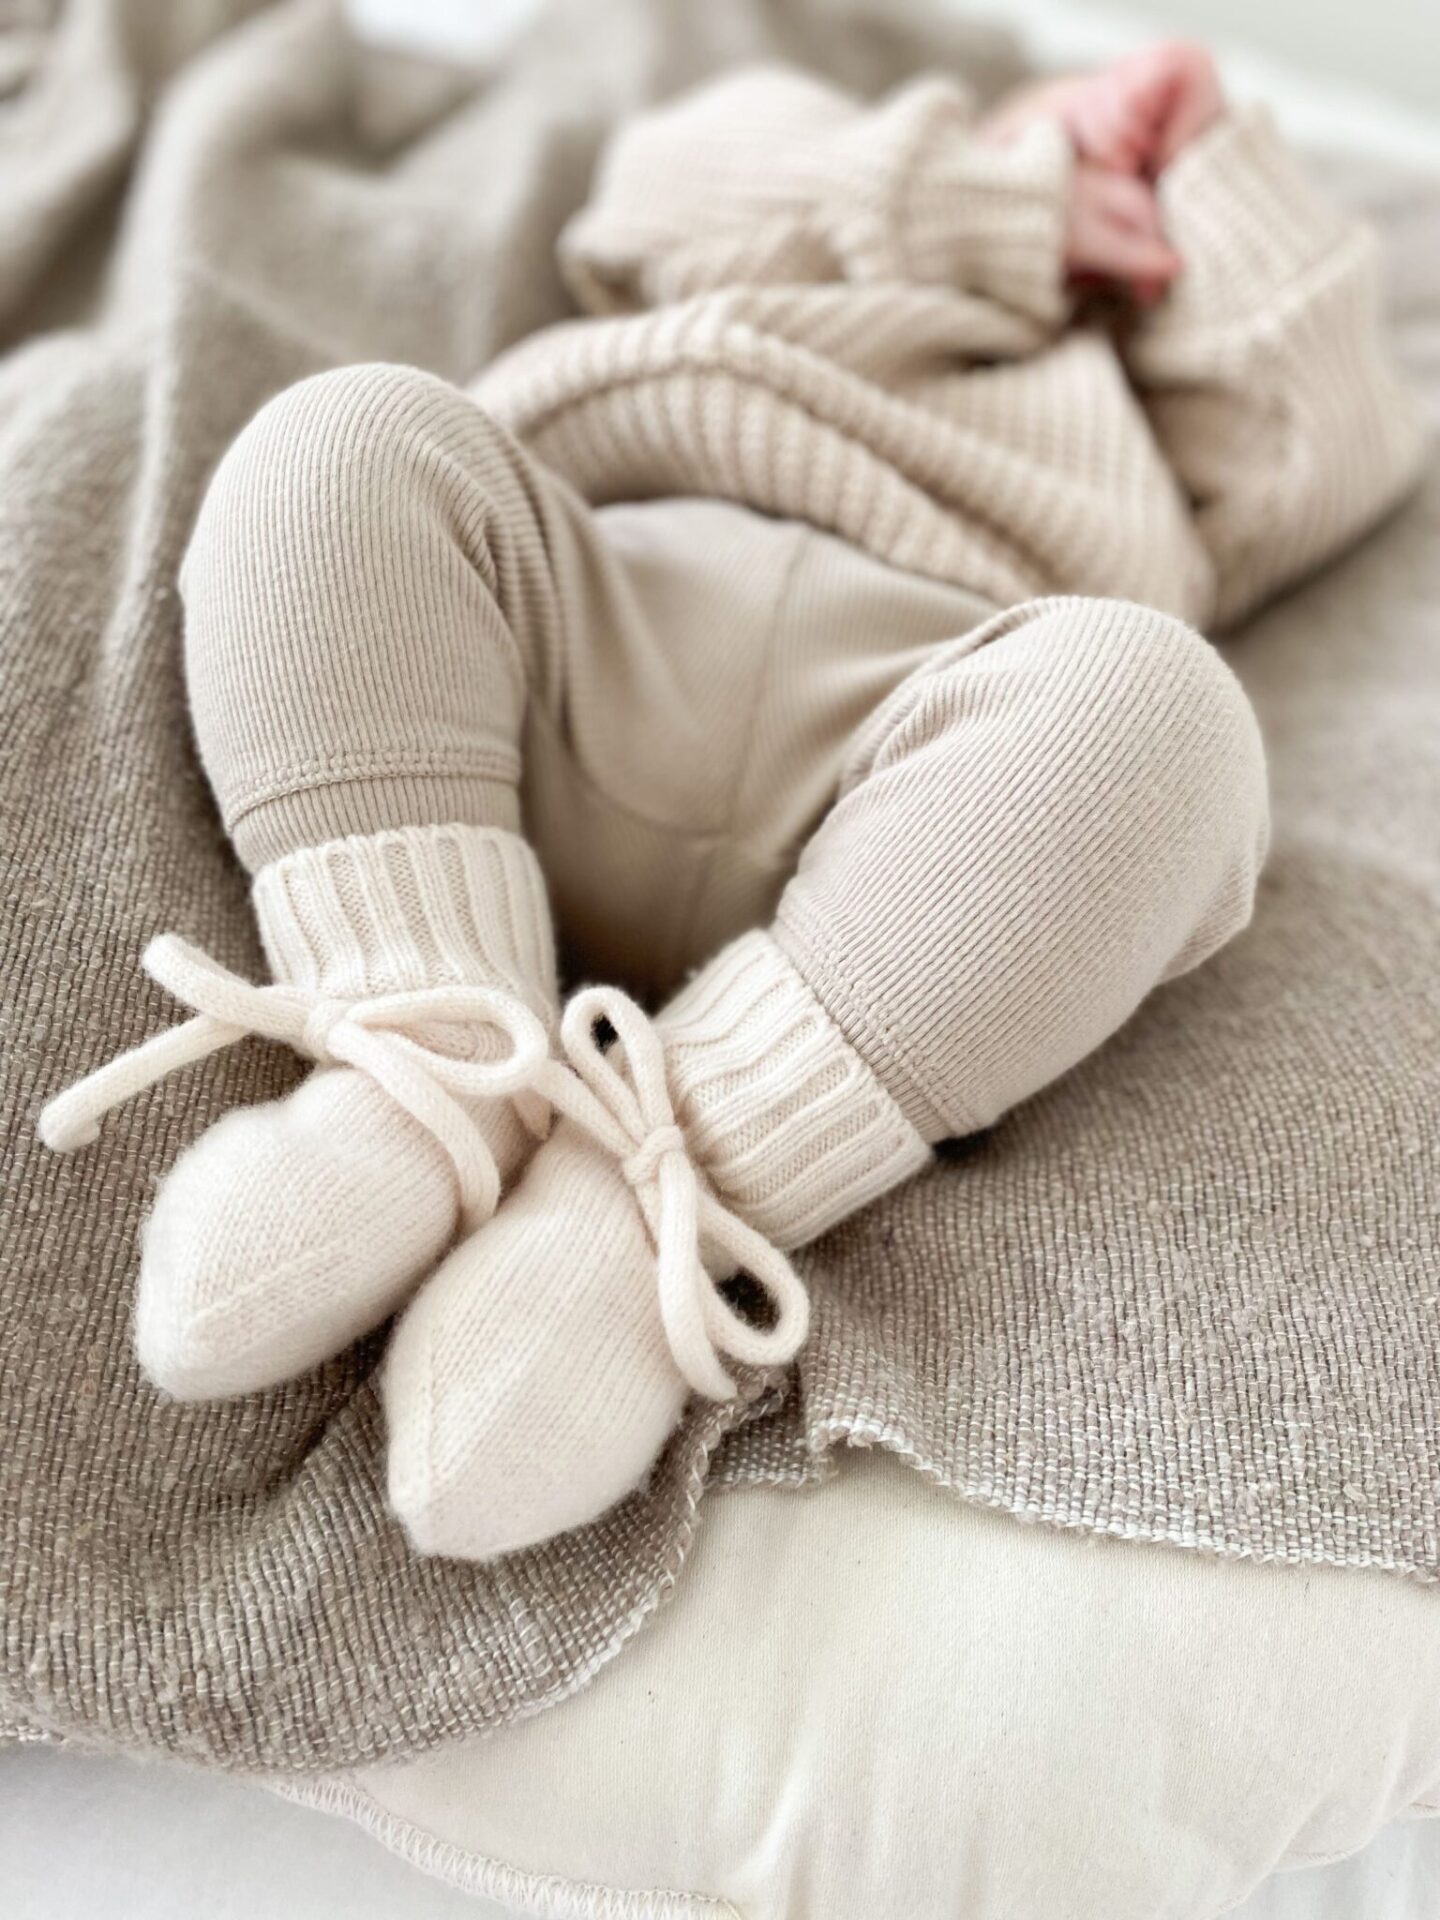 Chaussons bébé de marques internationales à petits prix - Babyfive